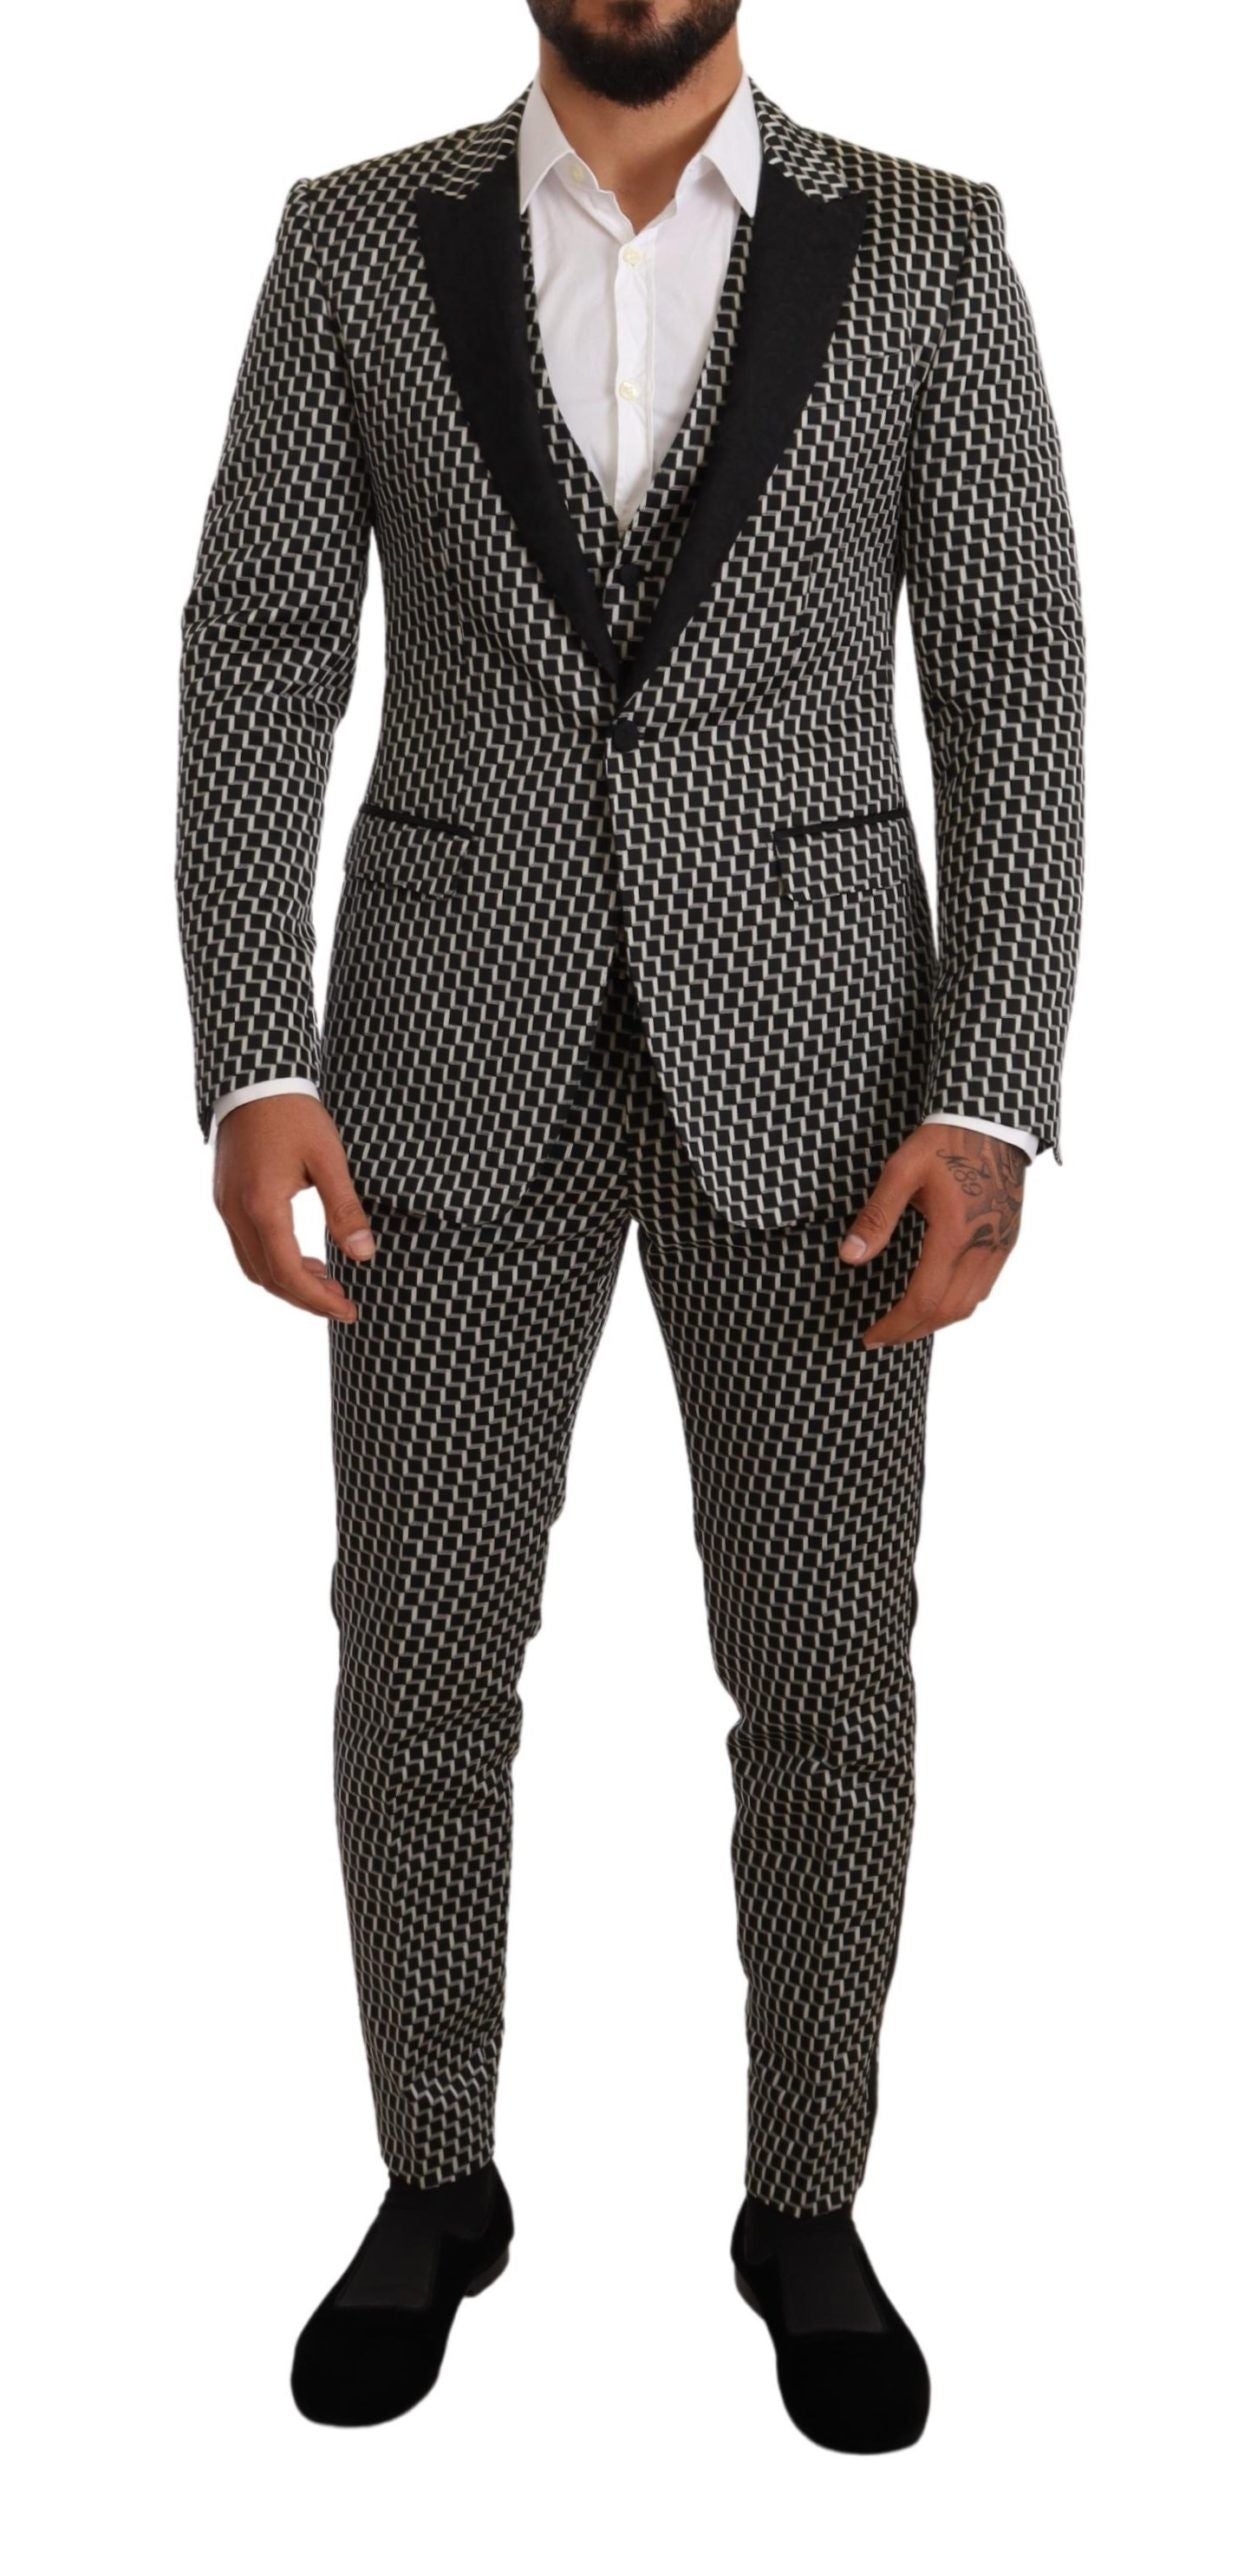 Elegant Martini Black Check Three-Piece Suit